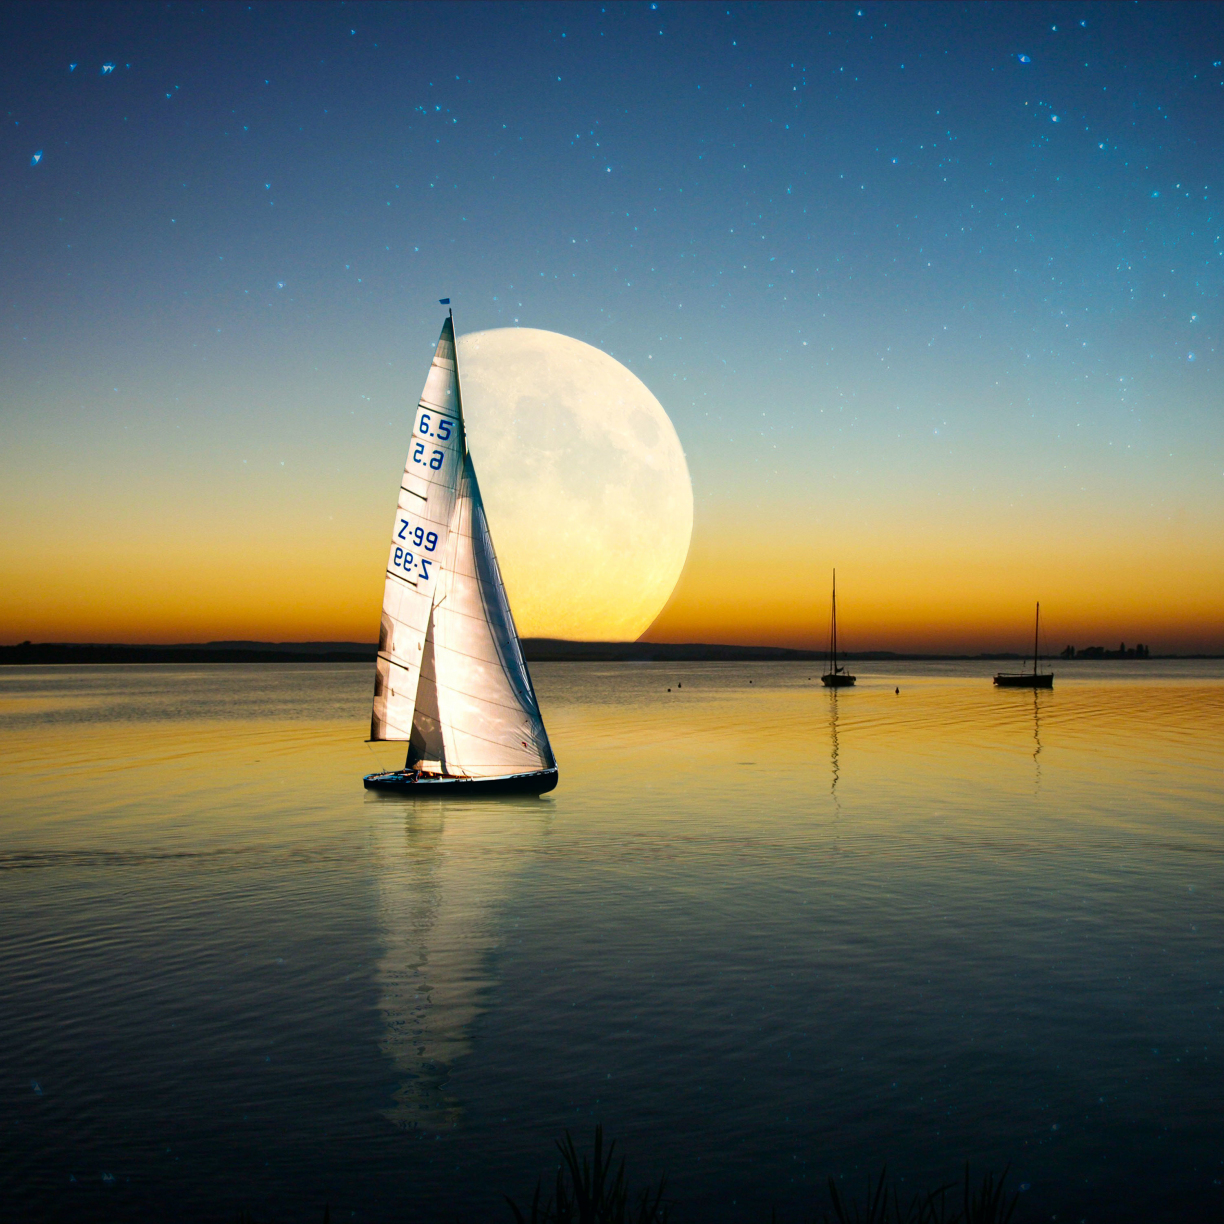 sailboat in moonlight